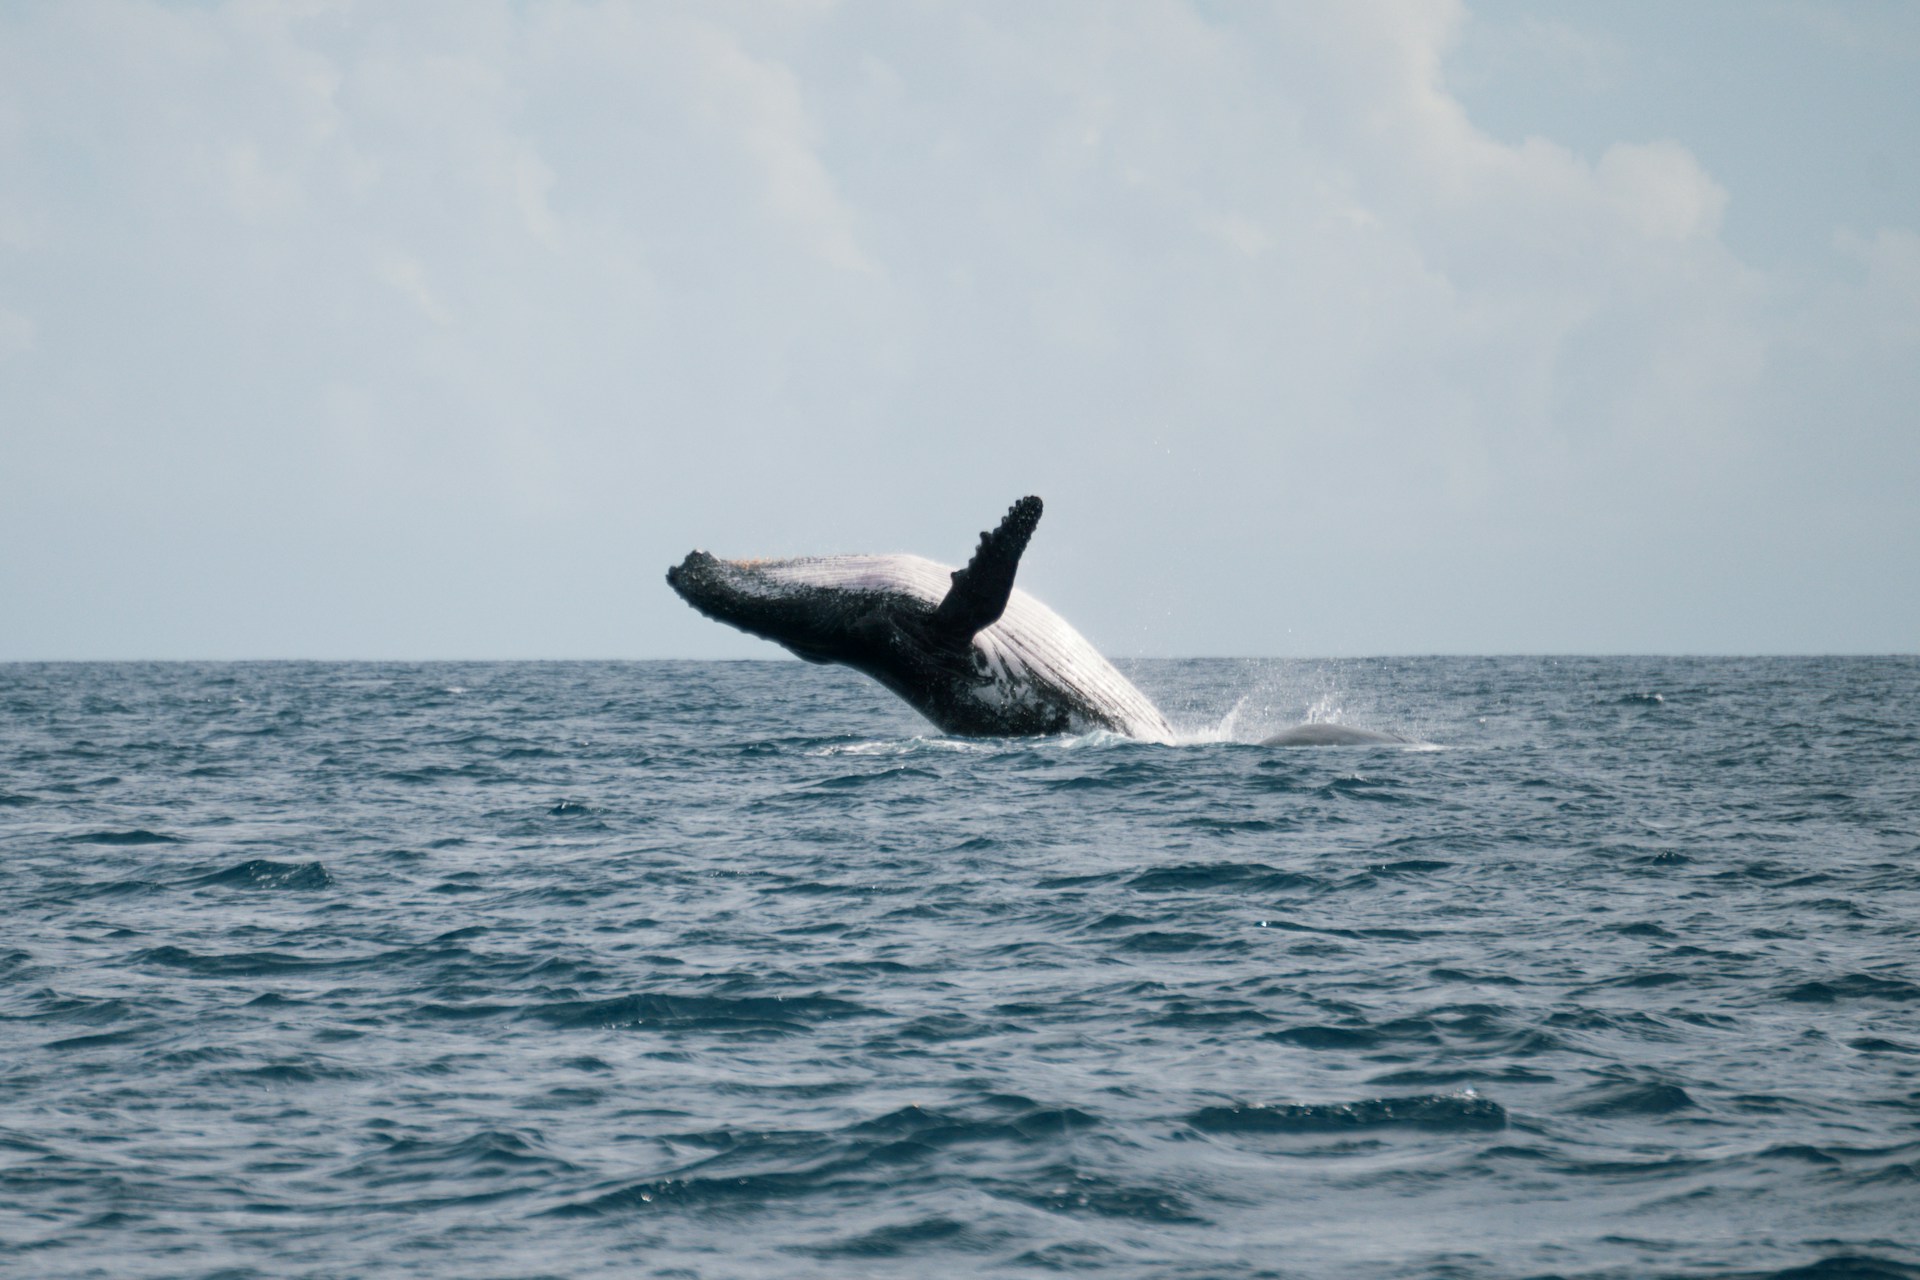 Las orcas son consideradas consumidores terciarios en muchas cadenas alimentarias marinas. Foto de Chloe Christine.